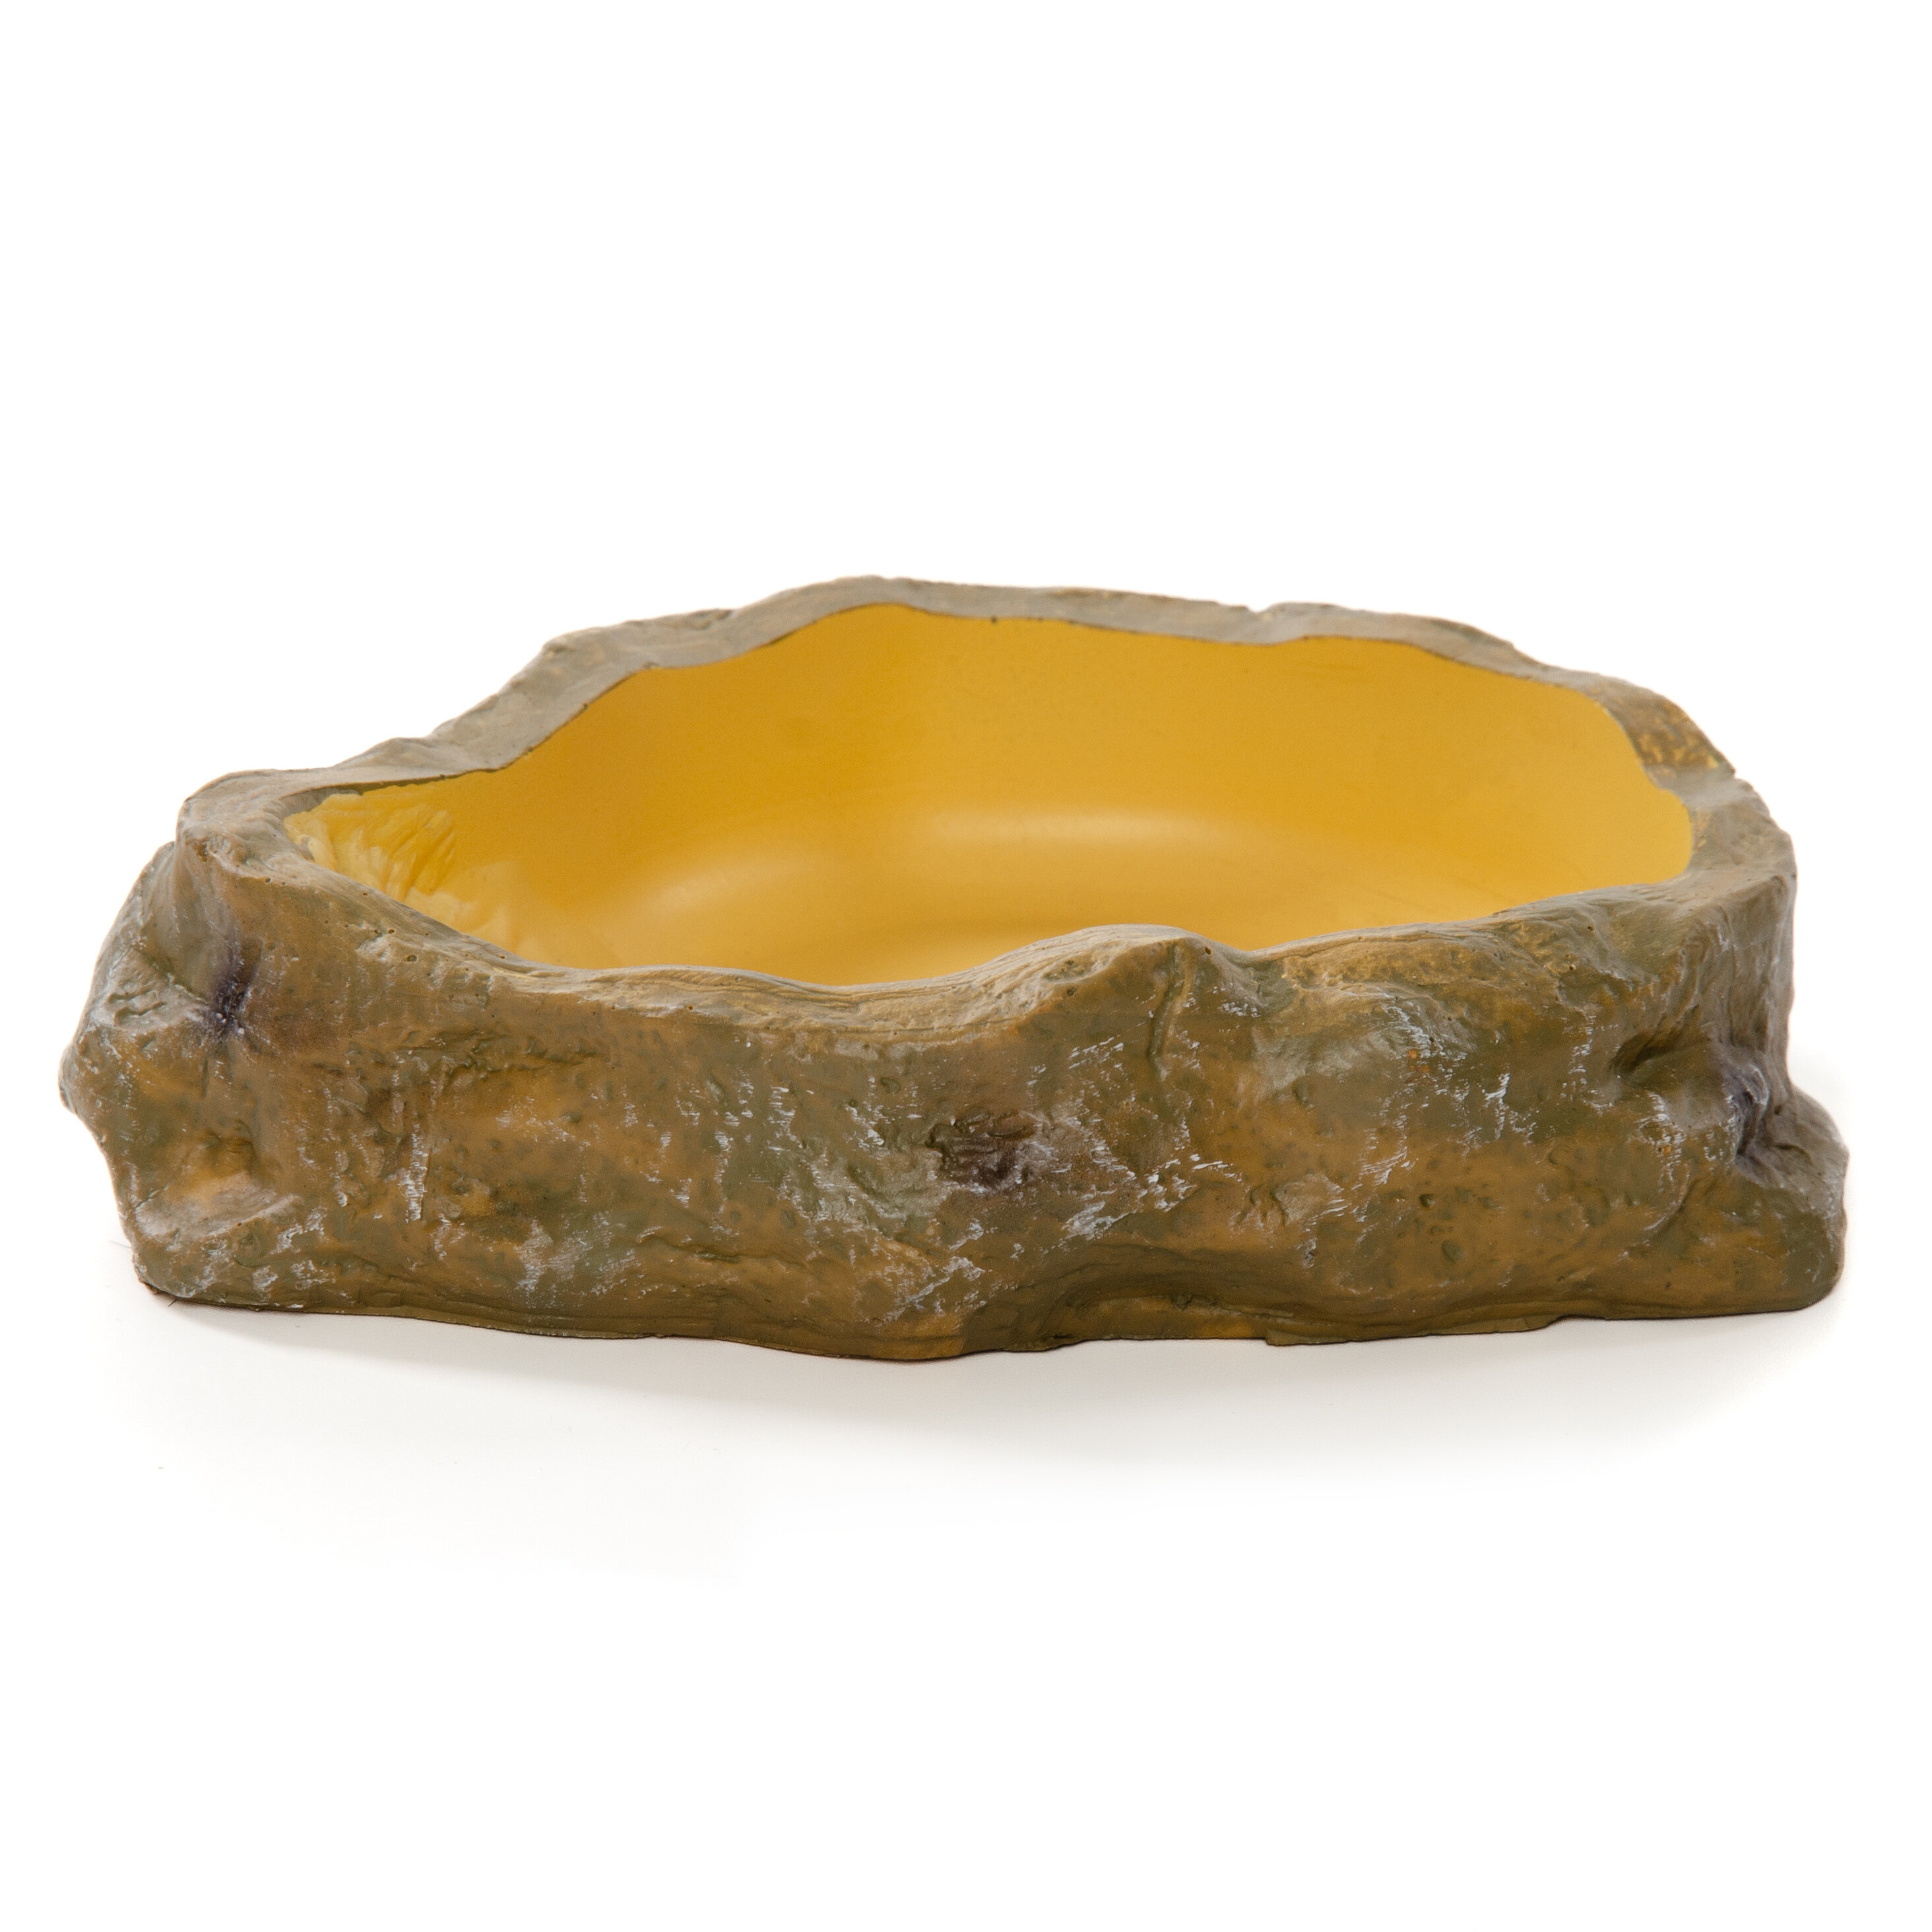 Поилка-купалка для рептилий MCLANZOO "Bowls" камень/бледно-жёлтая, 13.0х9.5х3.3см